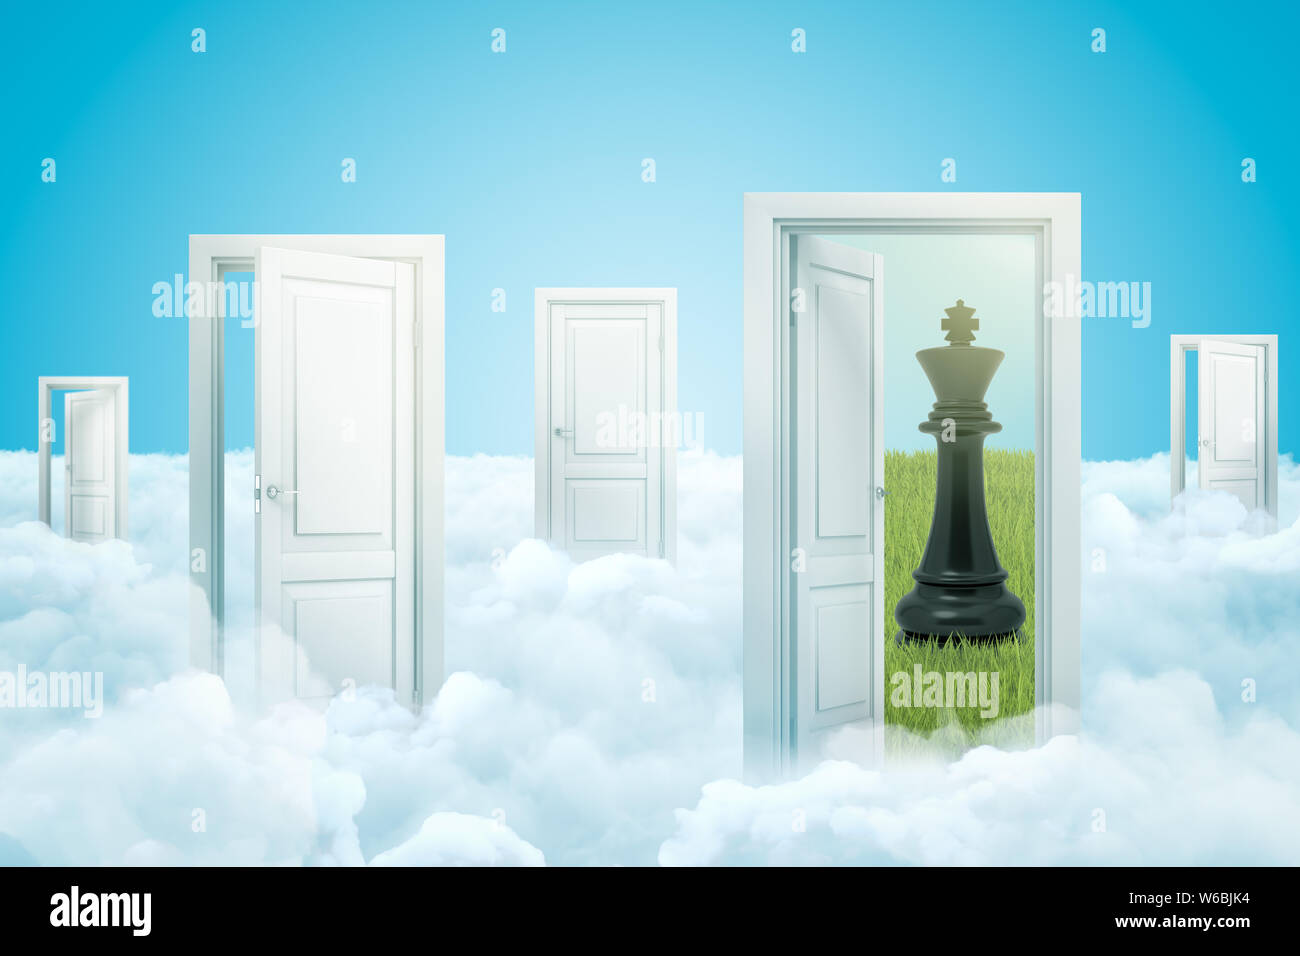 Le rendu 3D de nuages blancs avec des portes ouvertes et noir sur fond bleu roi d'échecs Banque D'Images